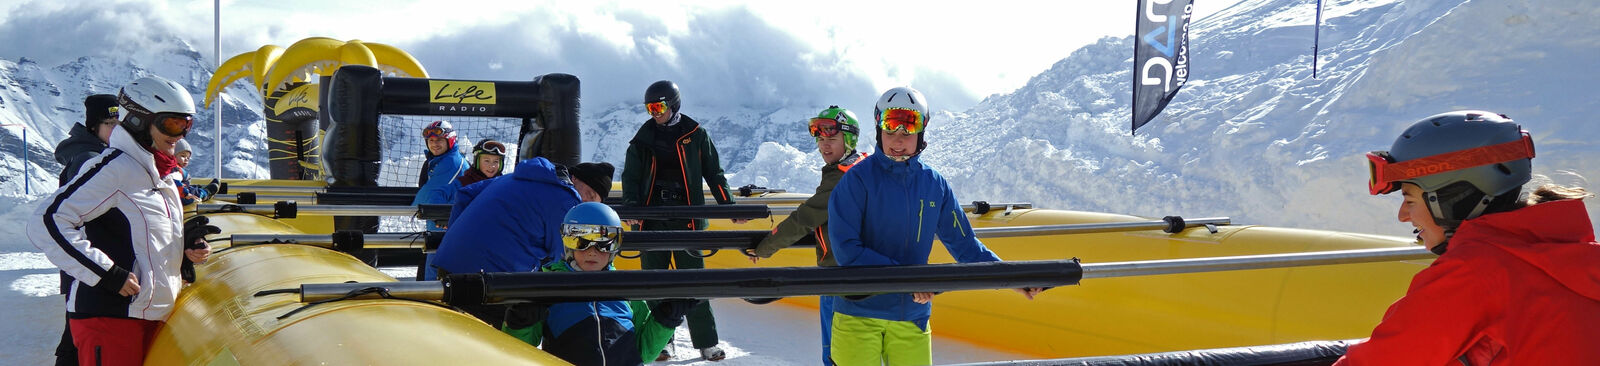 Familien-Ski-Wochenende im Alpbachtal-Wildschönau in Tirol